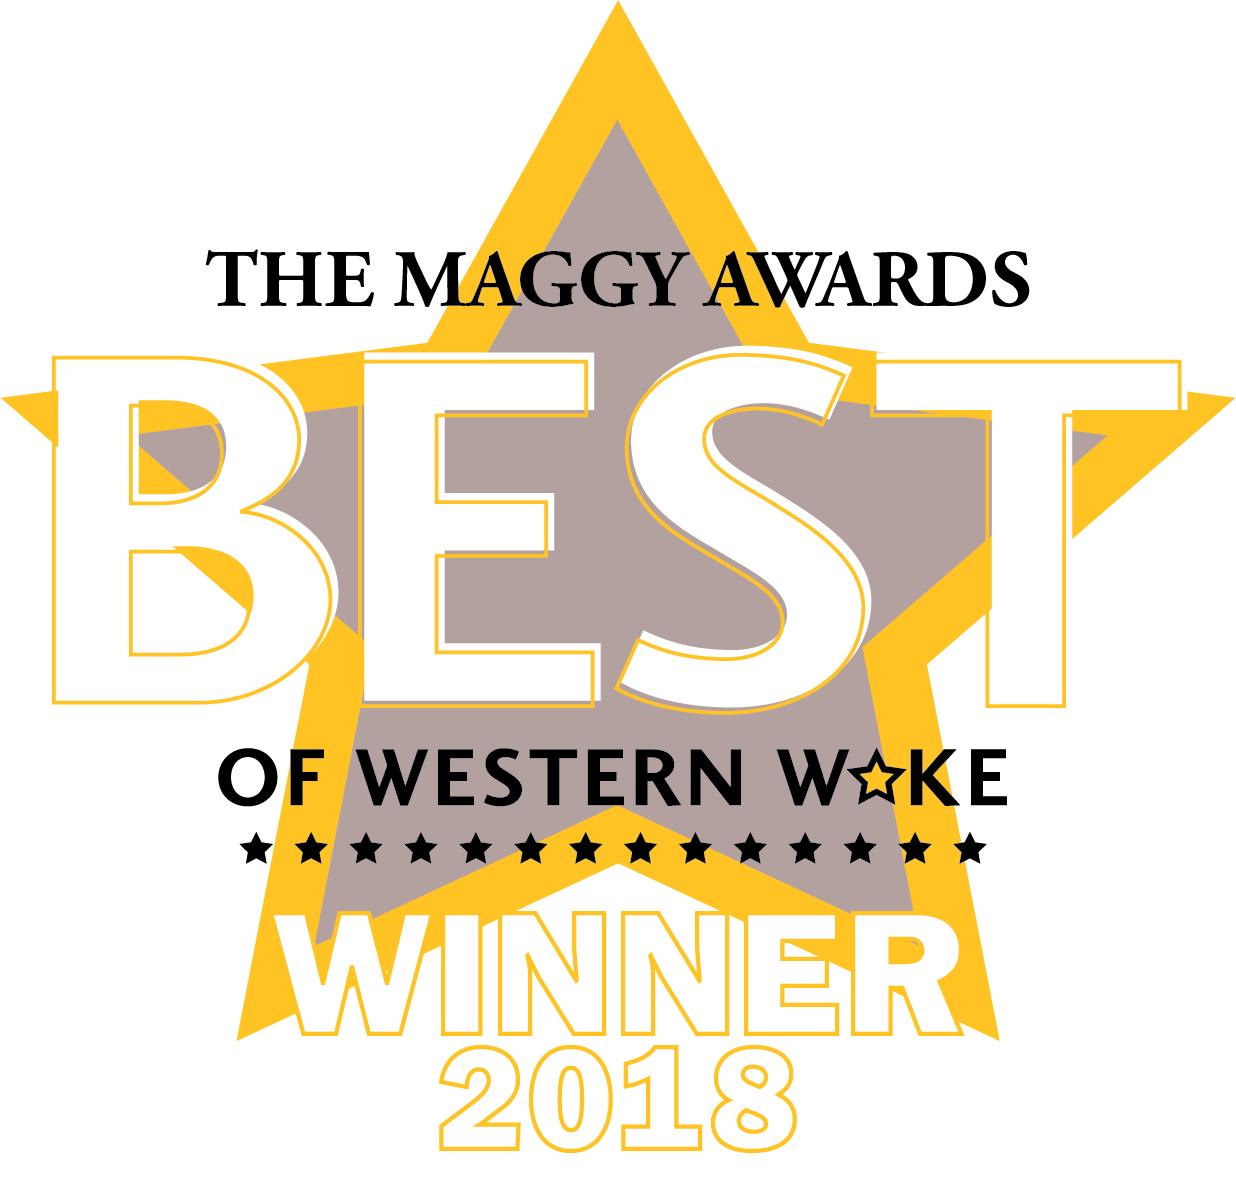 Maggy Awards Winner 2018 logo